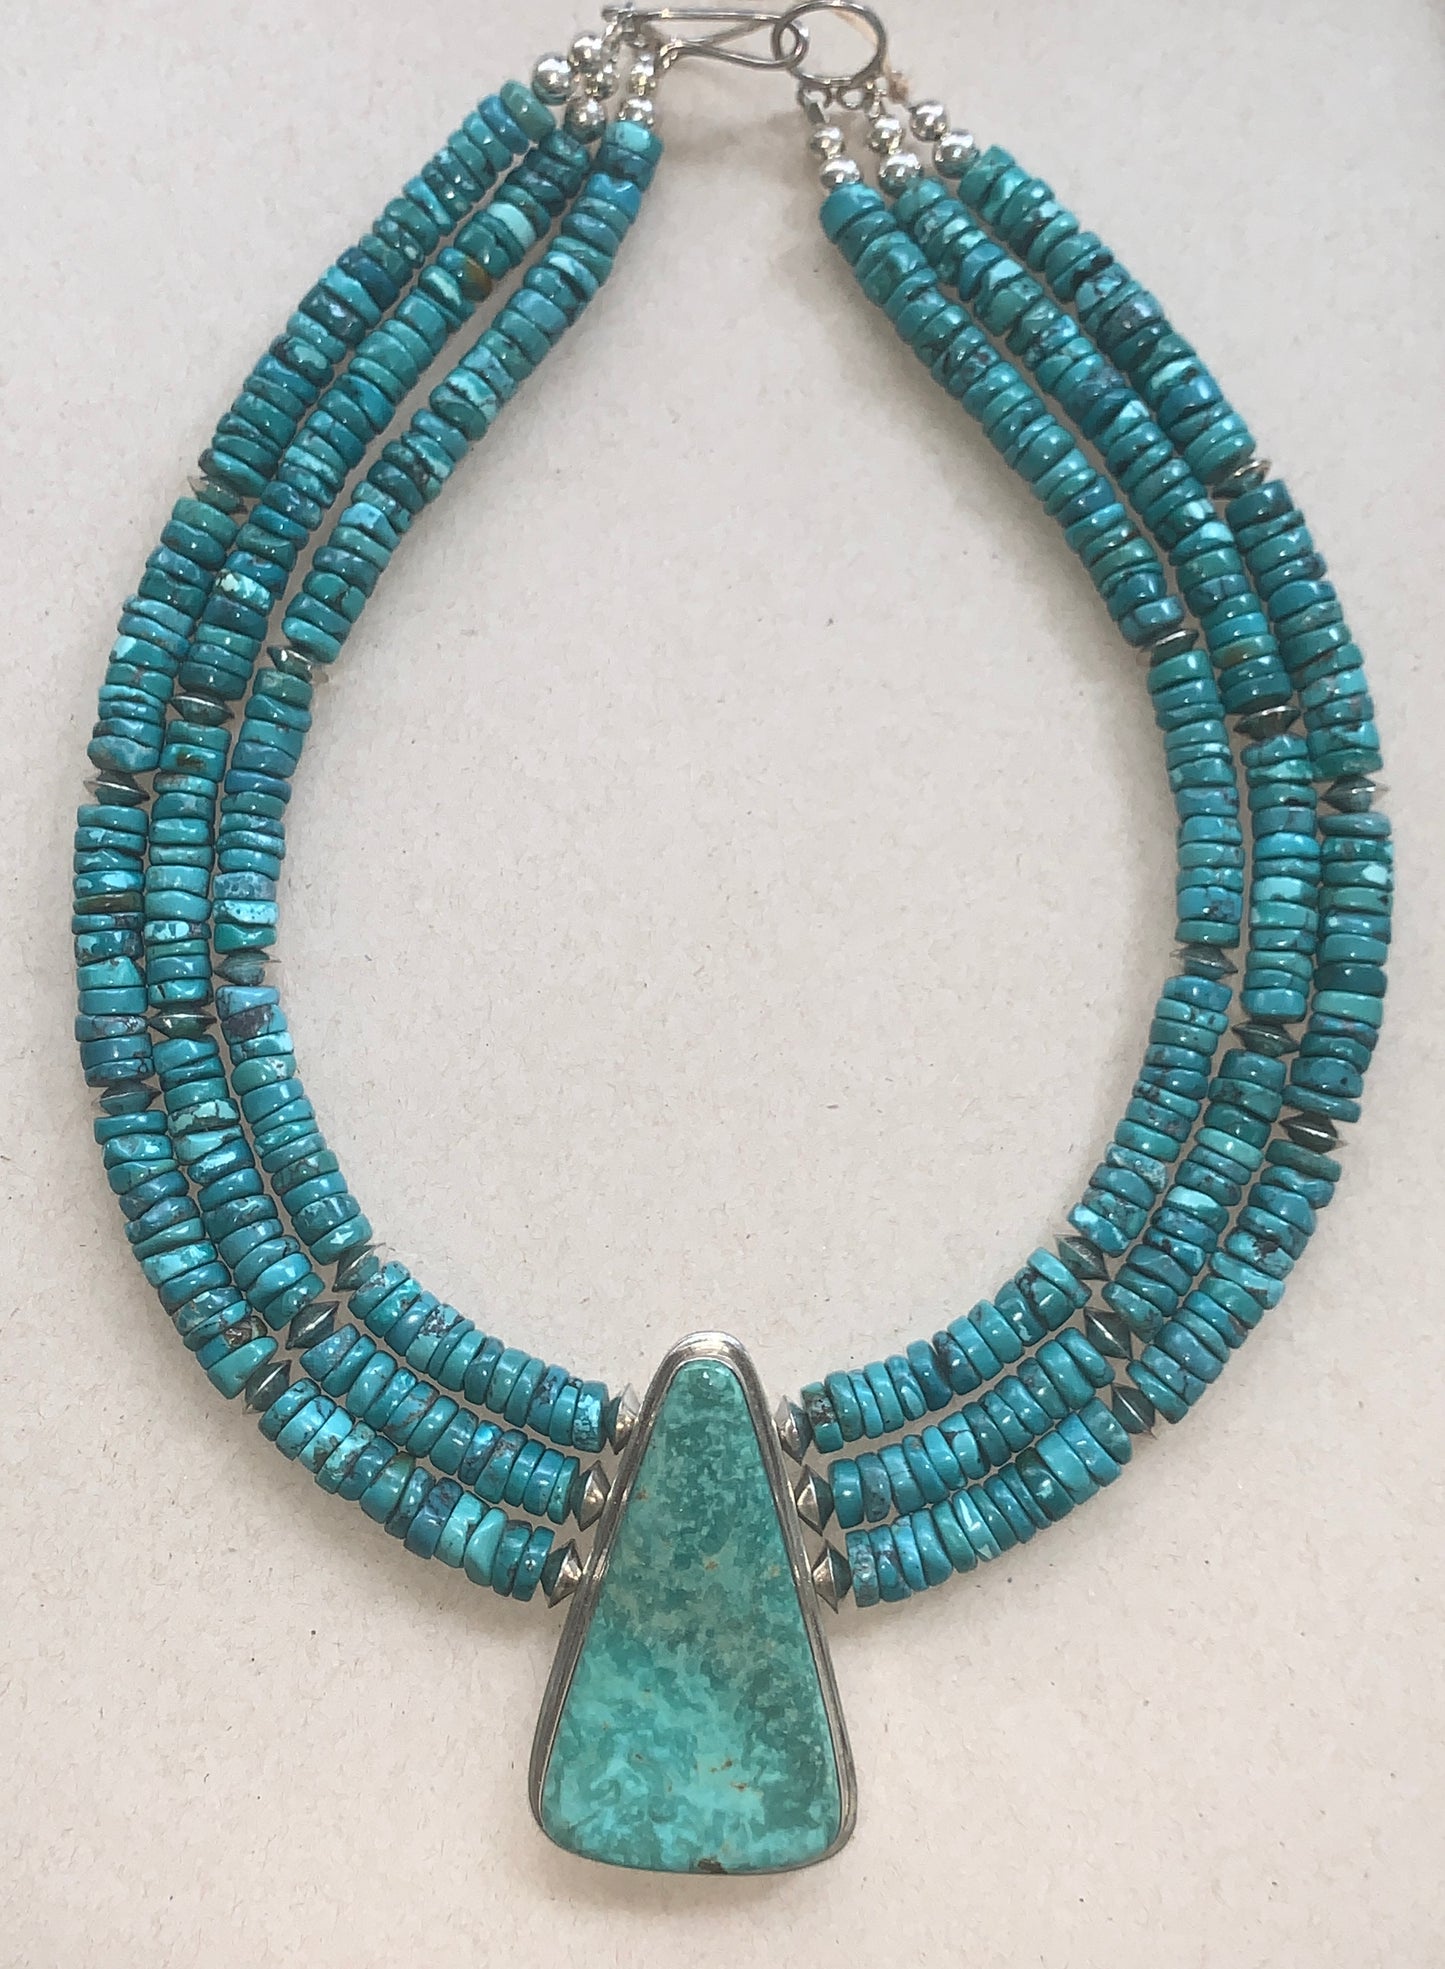 New Turquoise Necklace by Nestoria Pat Coriz - Santo Domingo Pueblo Tribe